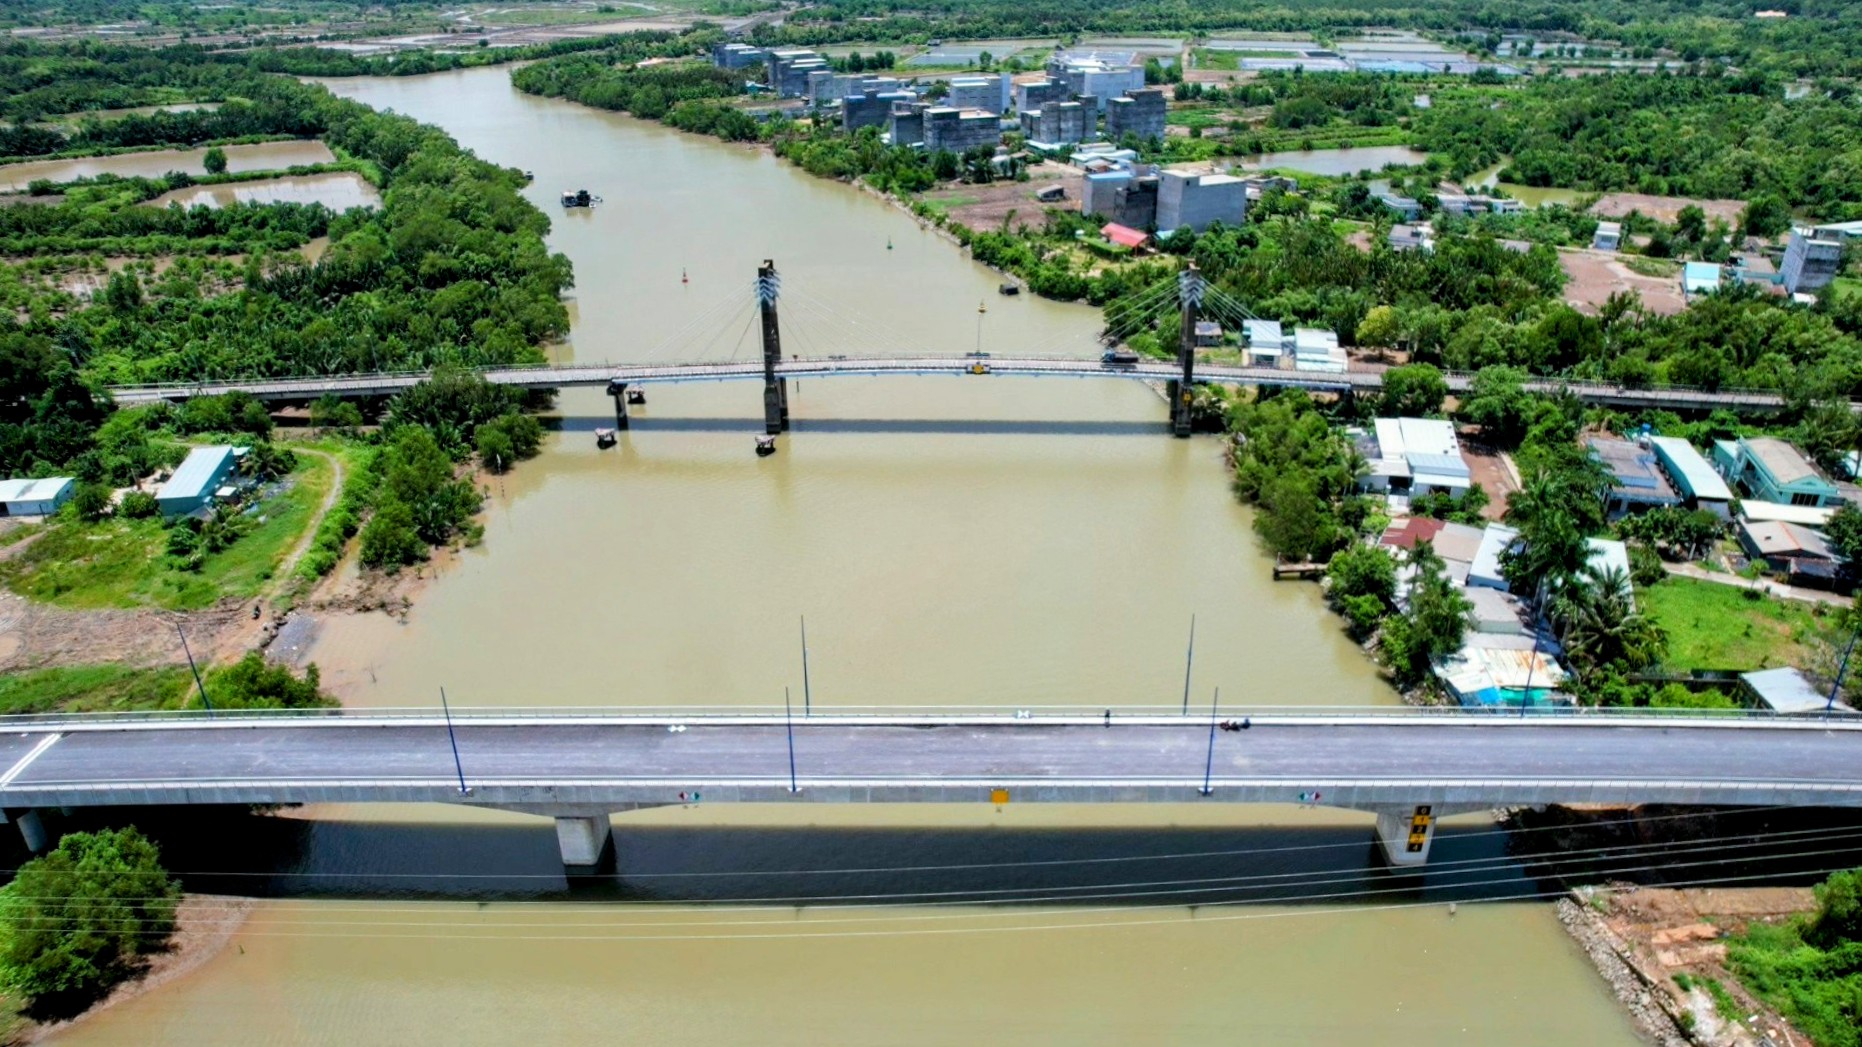 Cầu Vàm Sát 2 được xây mới với chiều dài 432,7m, rộng 10m; đường đầu cầu dài khoảng 647m kết nối vào đường Lý Nhơn và đường Đê Soài Rạp. Cầu Vàm Sát 2 được hợp long từ năm 2019.  